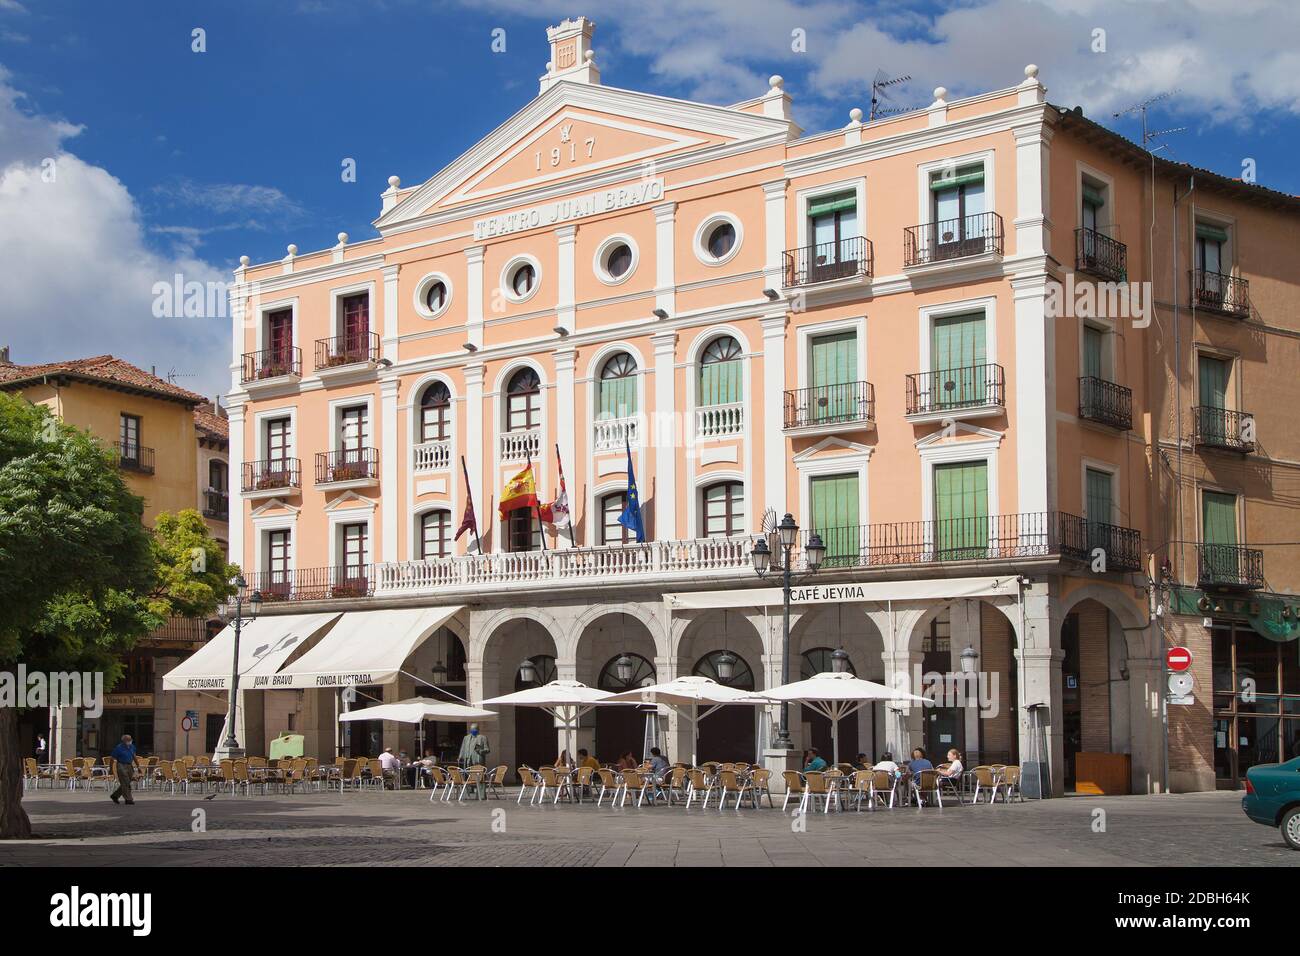 Segovia, Spain - August 21, 2020: Theatre Juan Bravo in the Plaza Mayor of Segovia, Spain. Stock Photo